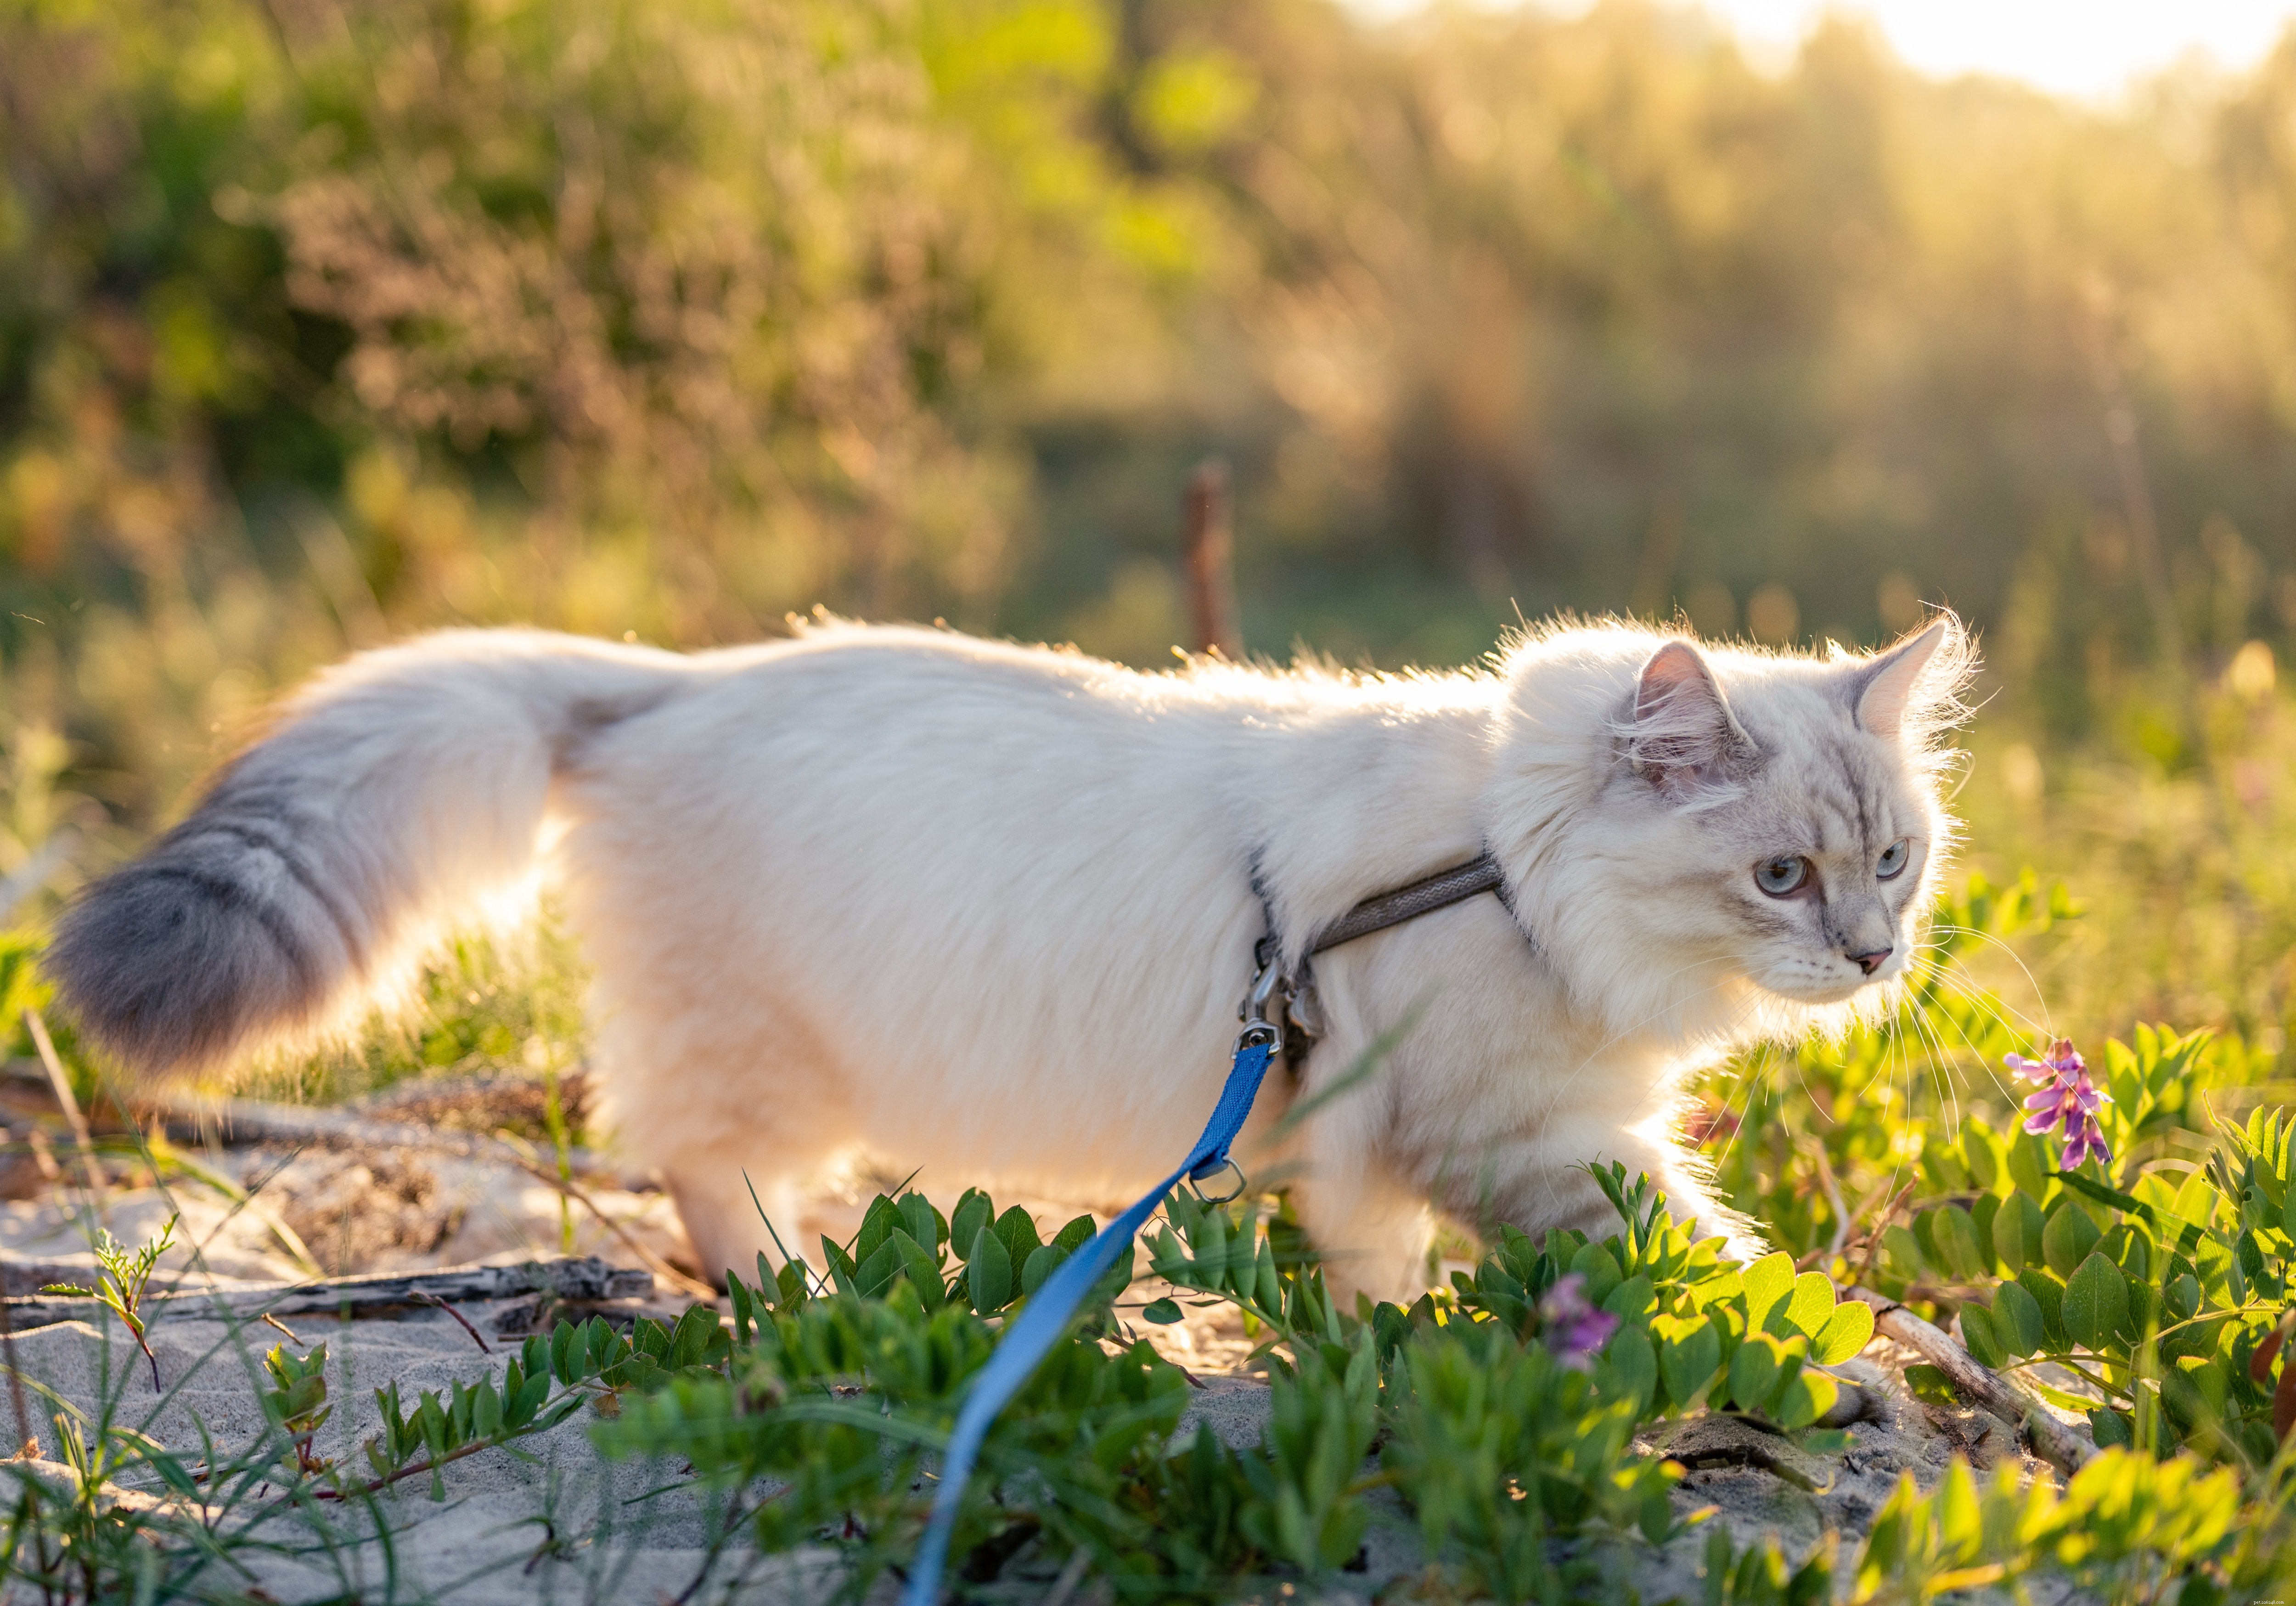 Come insegnare a un gatto a camminare al guinzaglio?